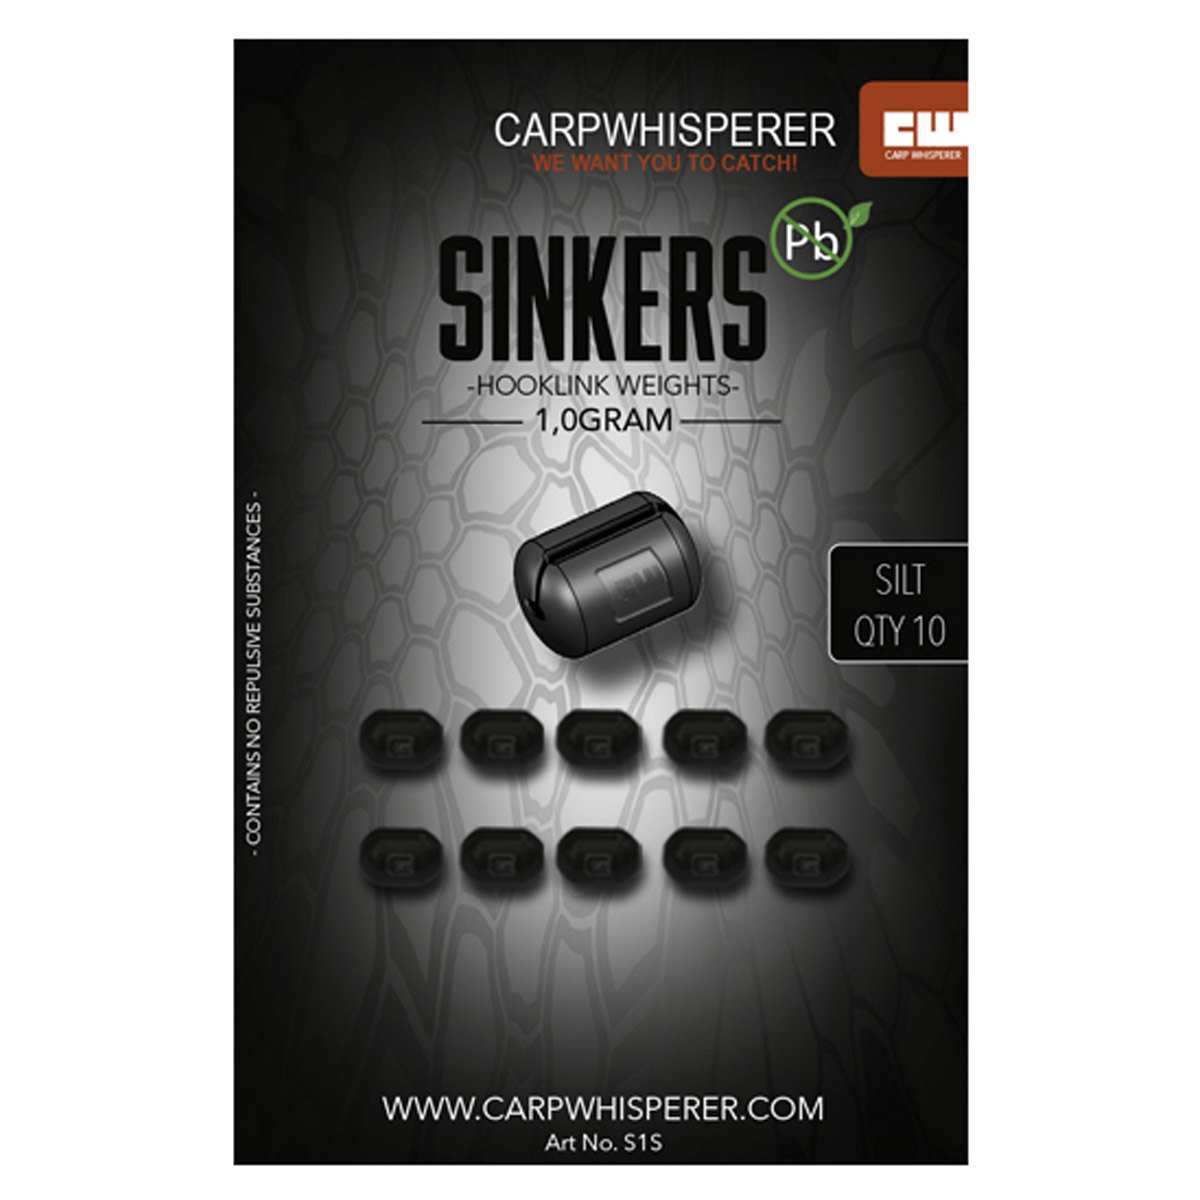 Carp Whisperer - Sinkers Quick Change Silt